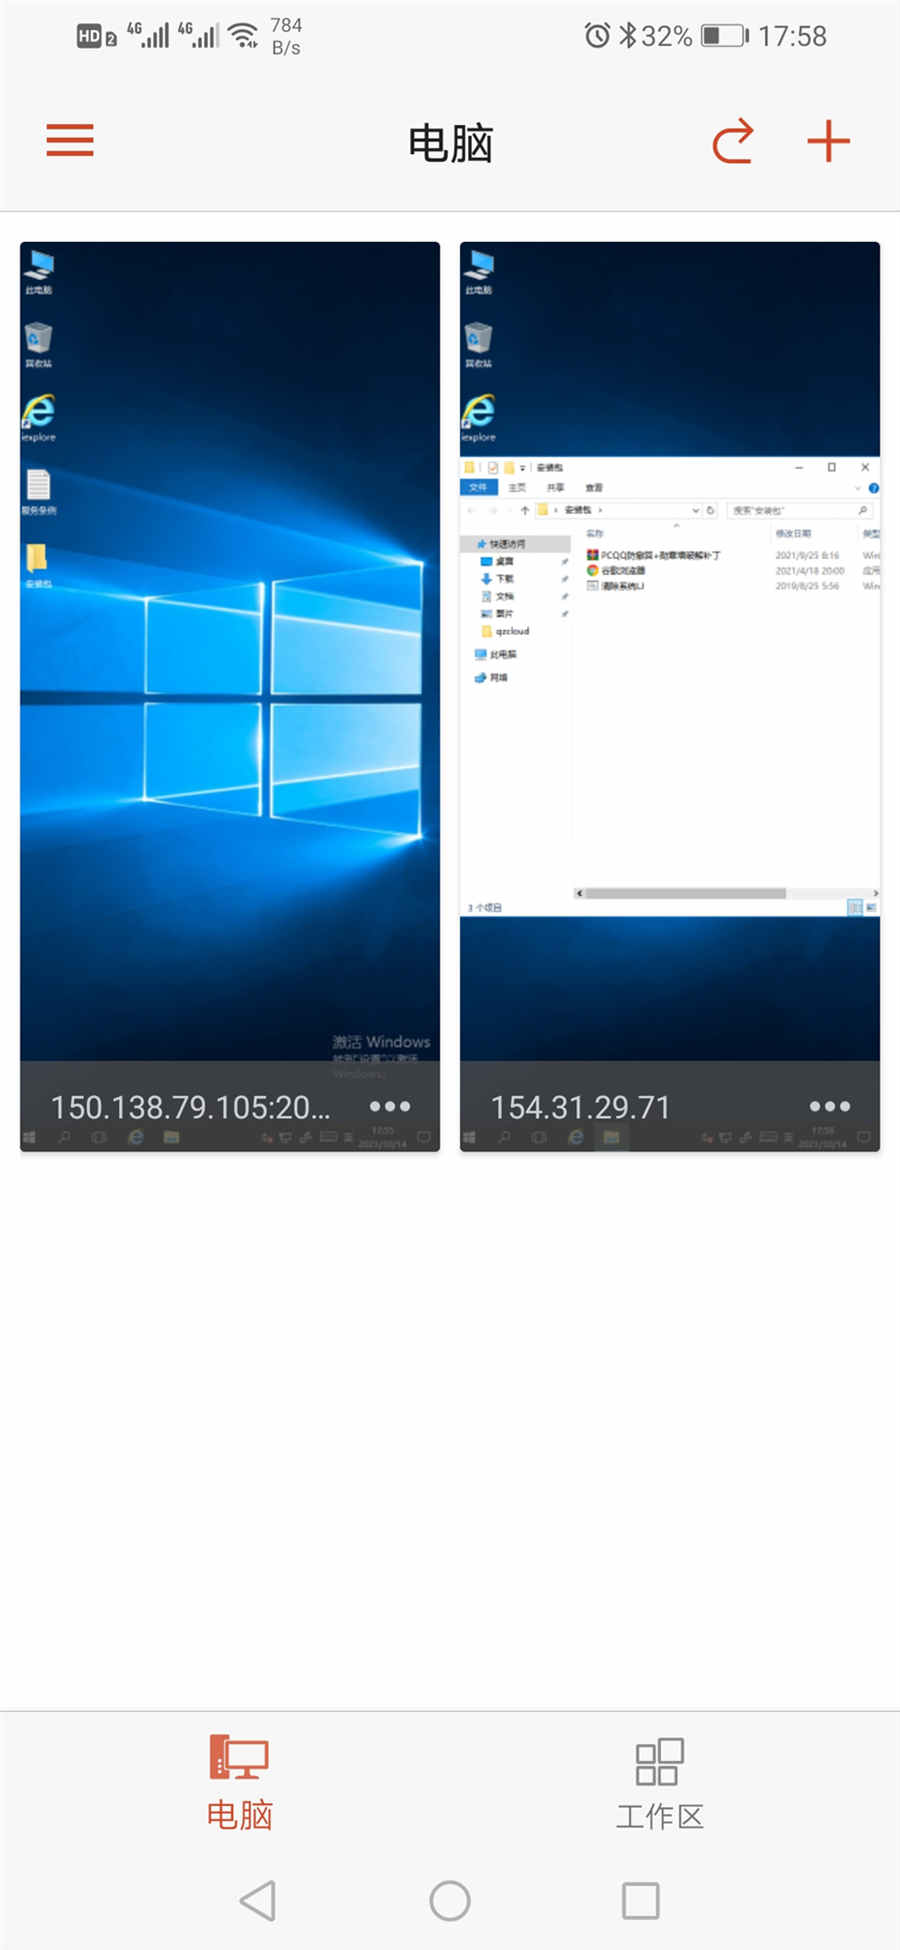 微软中文版手机远程桌面使用教程和下载 手机远程 远程桌面 微软远程 Microsoft远程 第8张